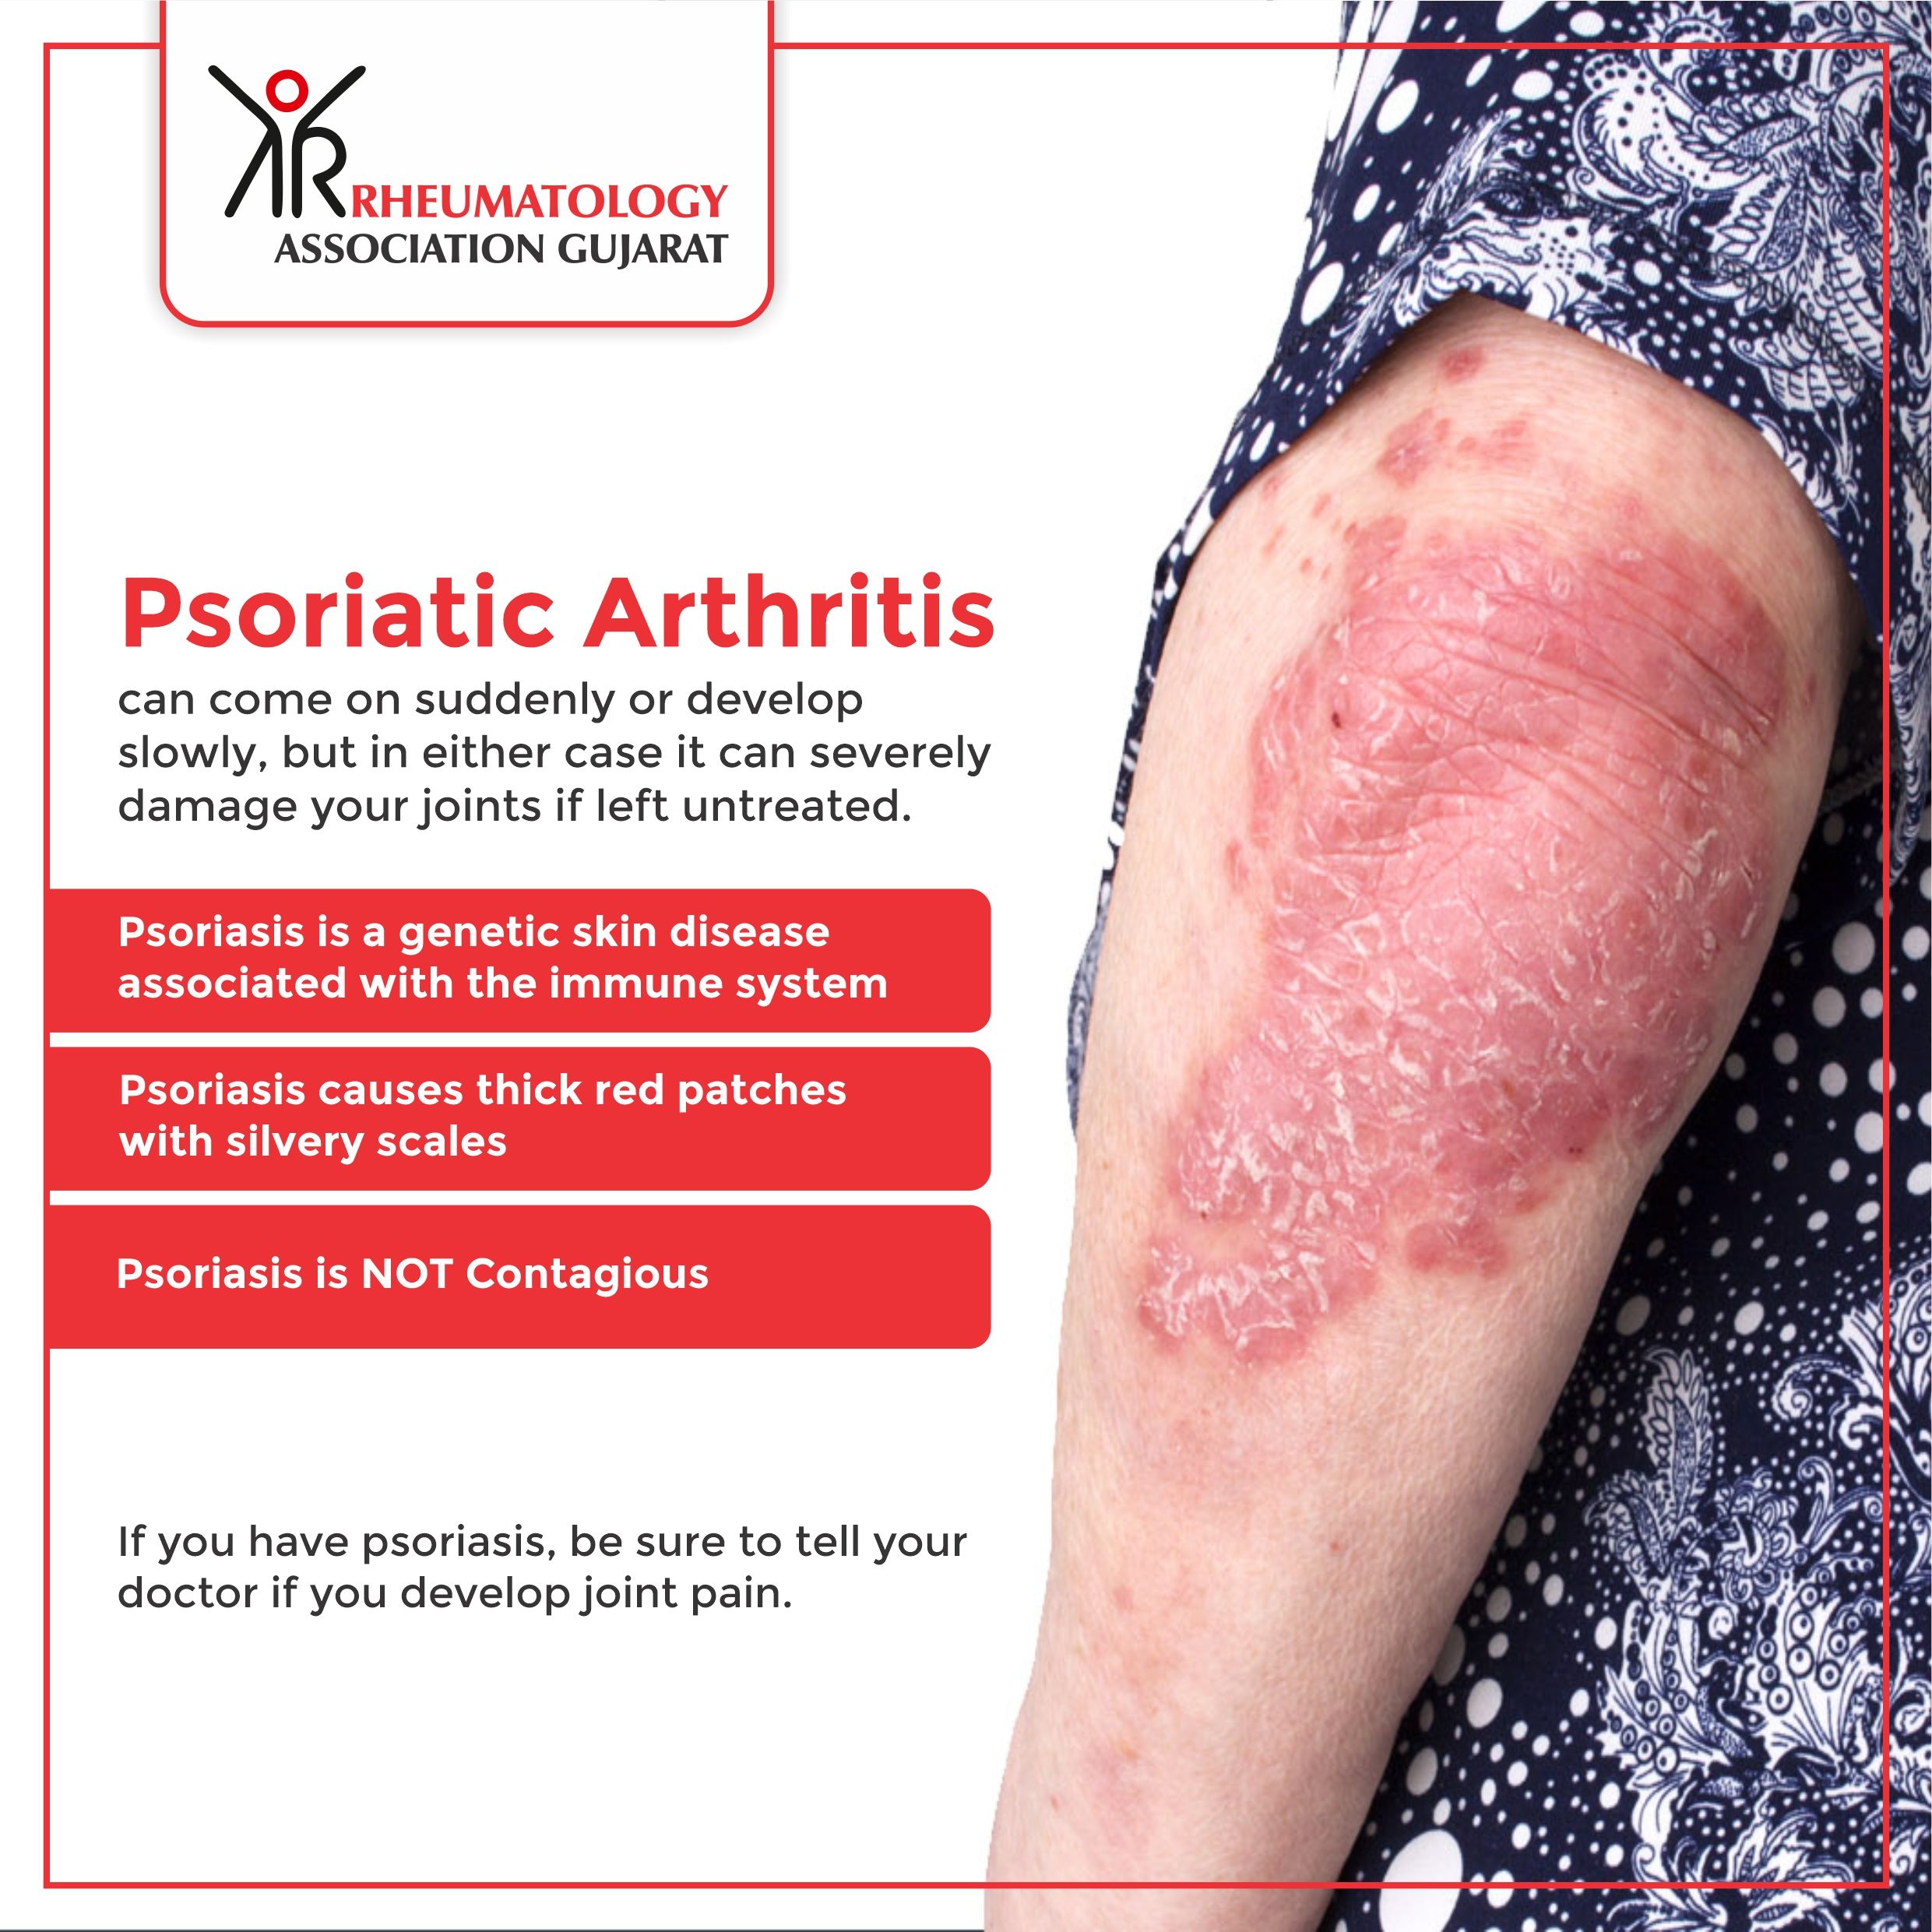 Psoriatic arthritis in 2020